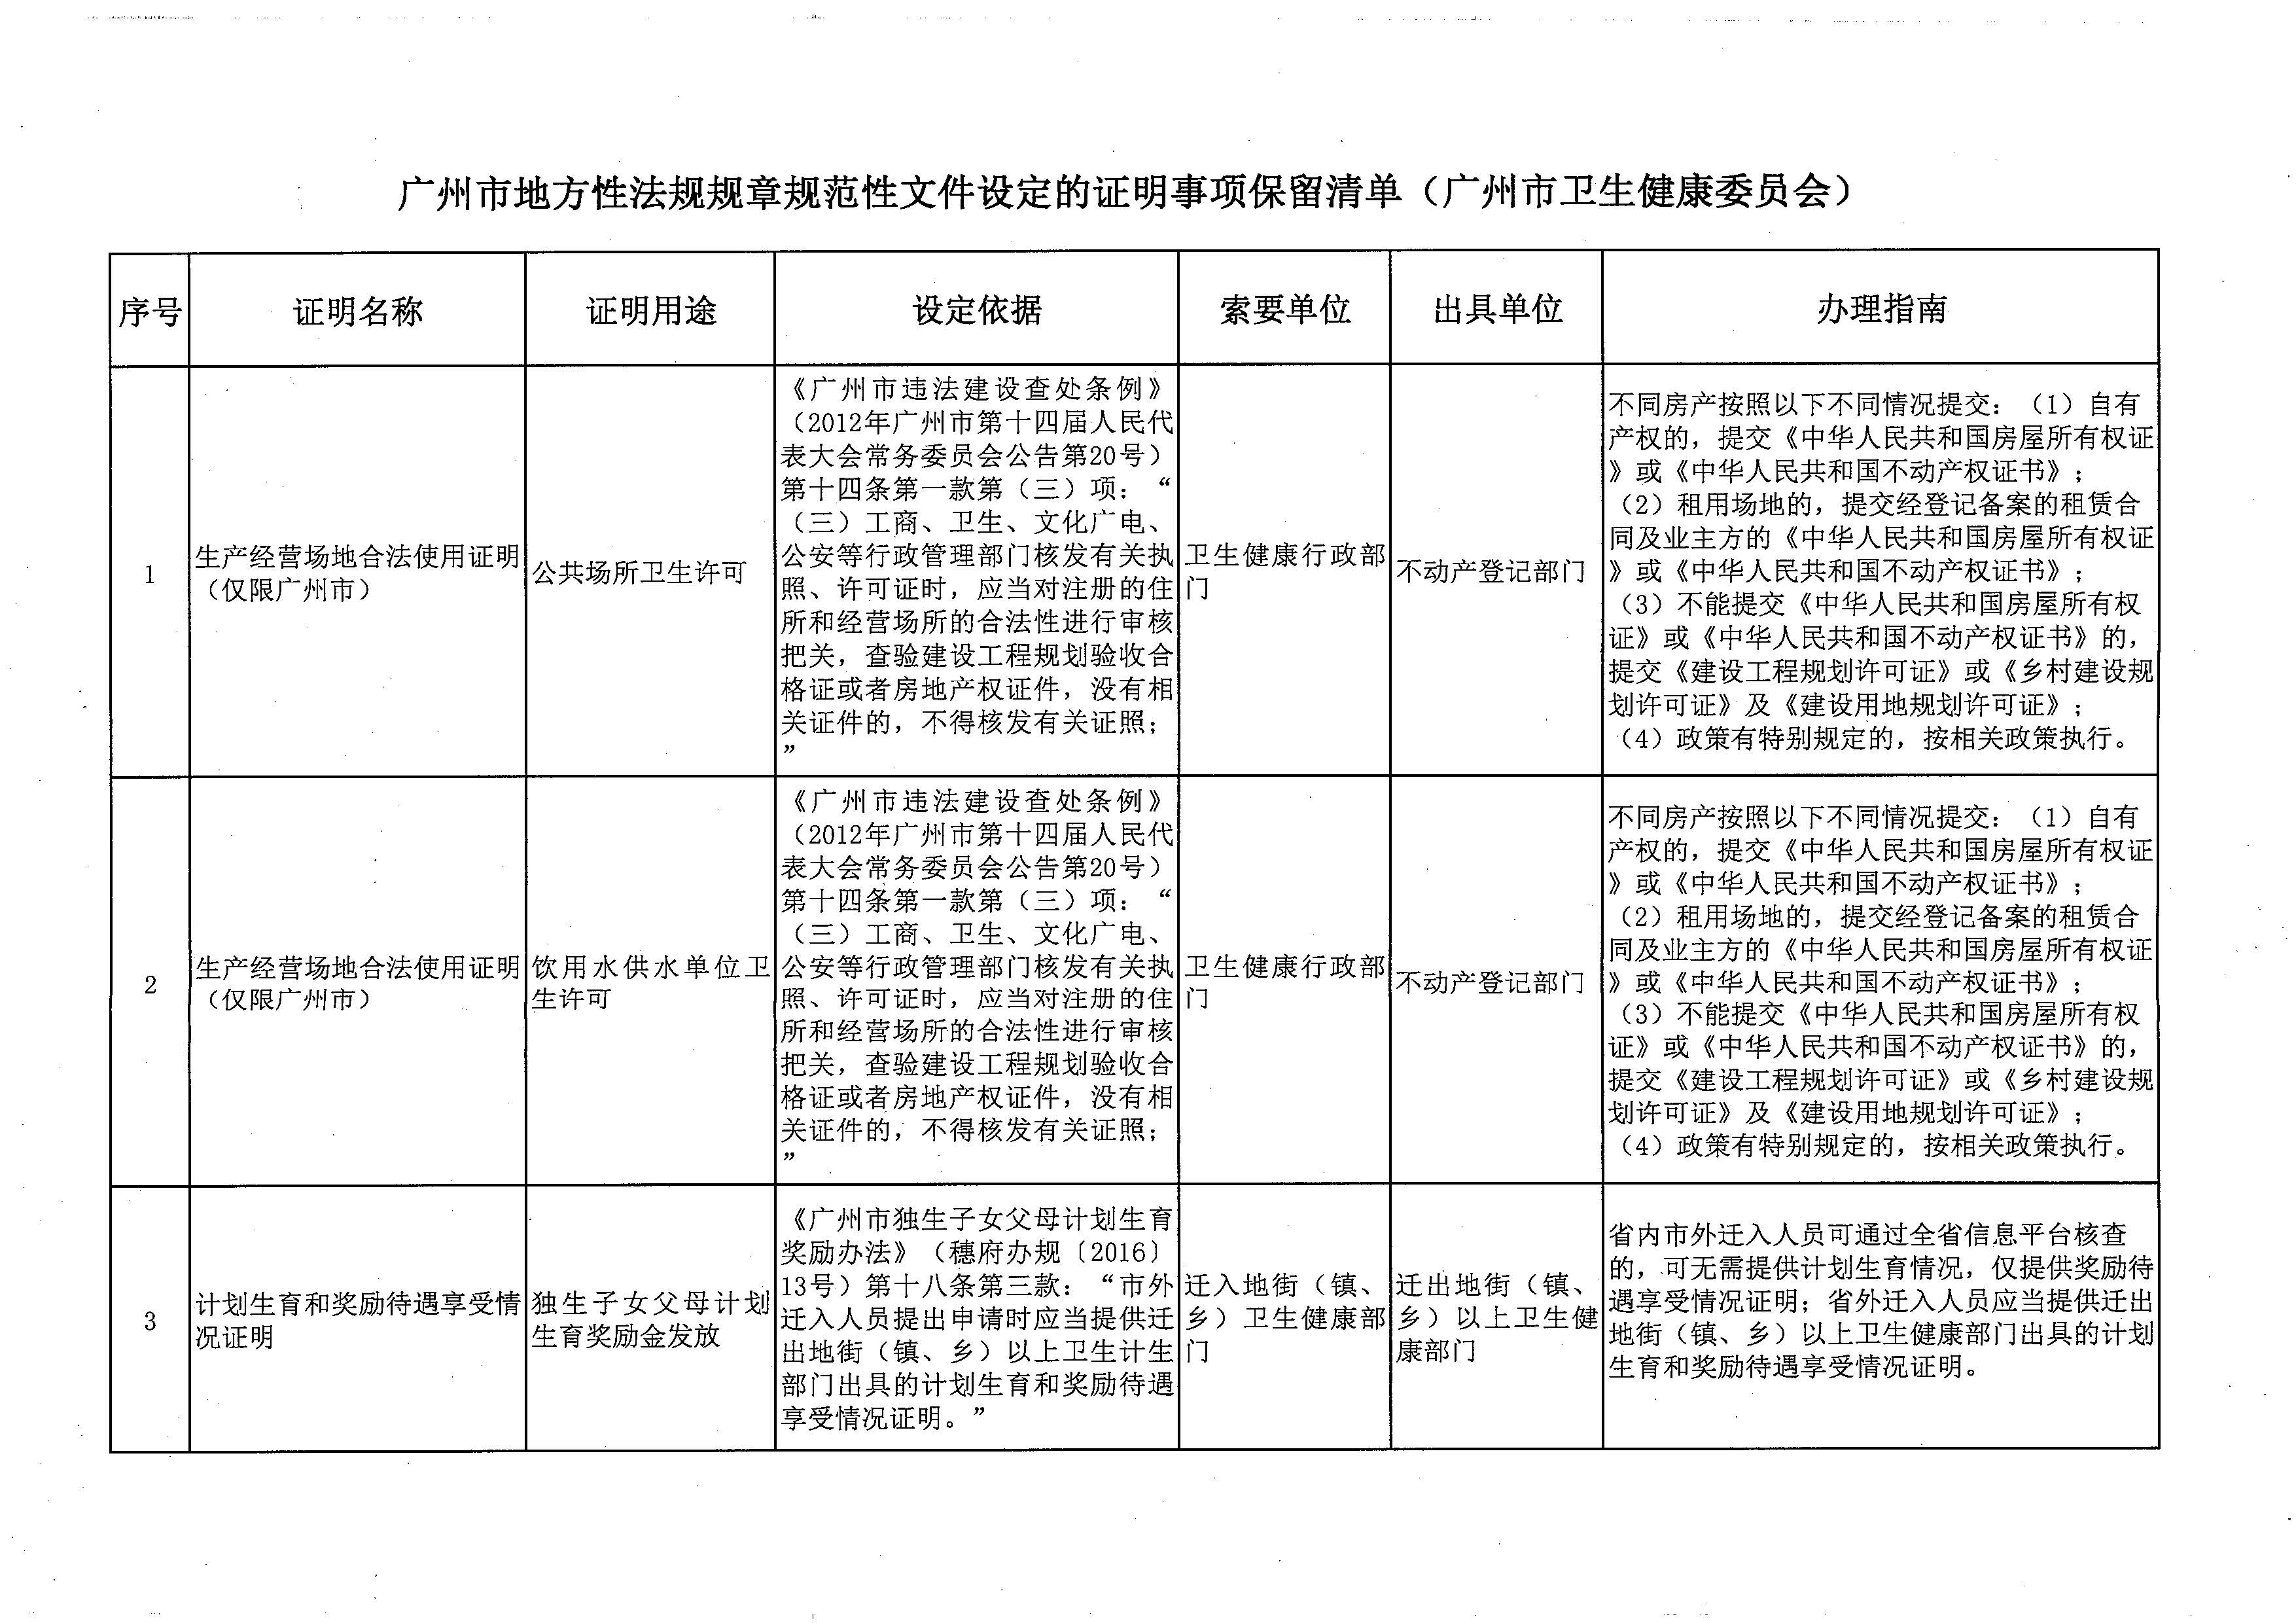 广州市地方性法规规章规范性文件设定的证明事项保留清单（广州市卫生健康委员会）.jpg